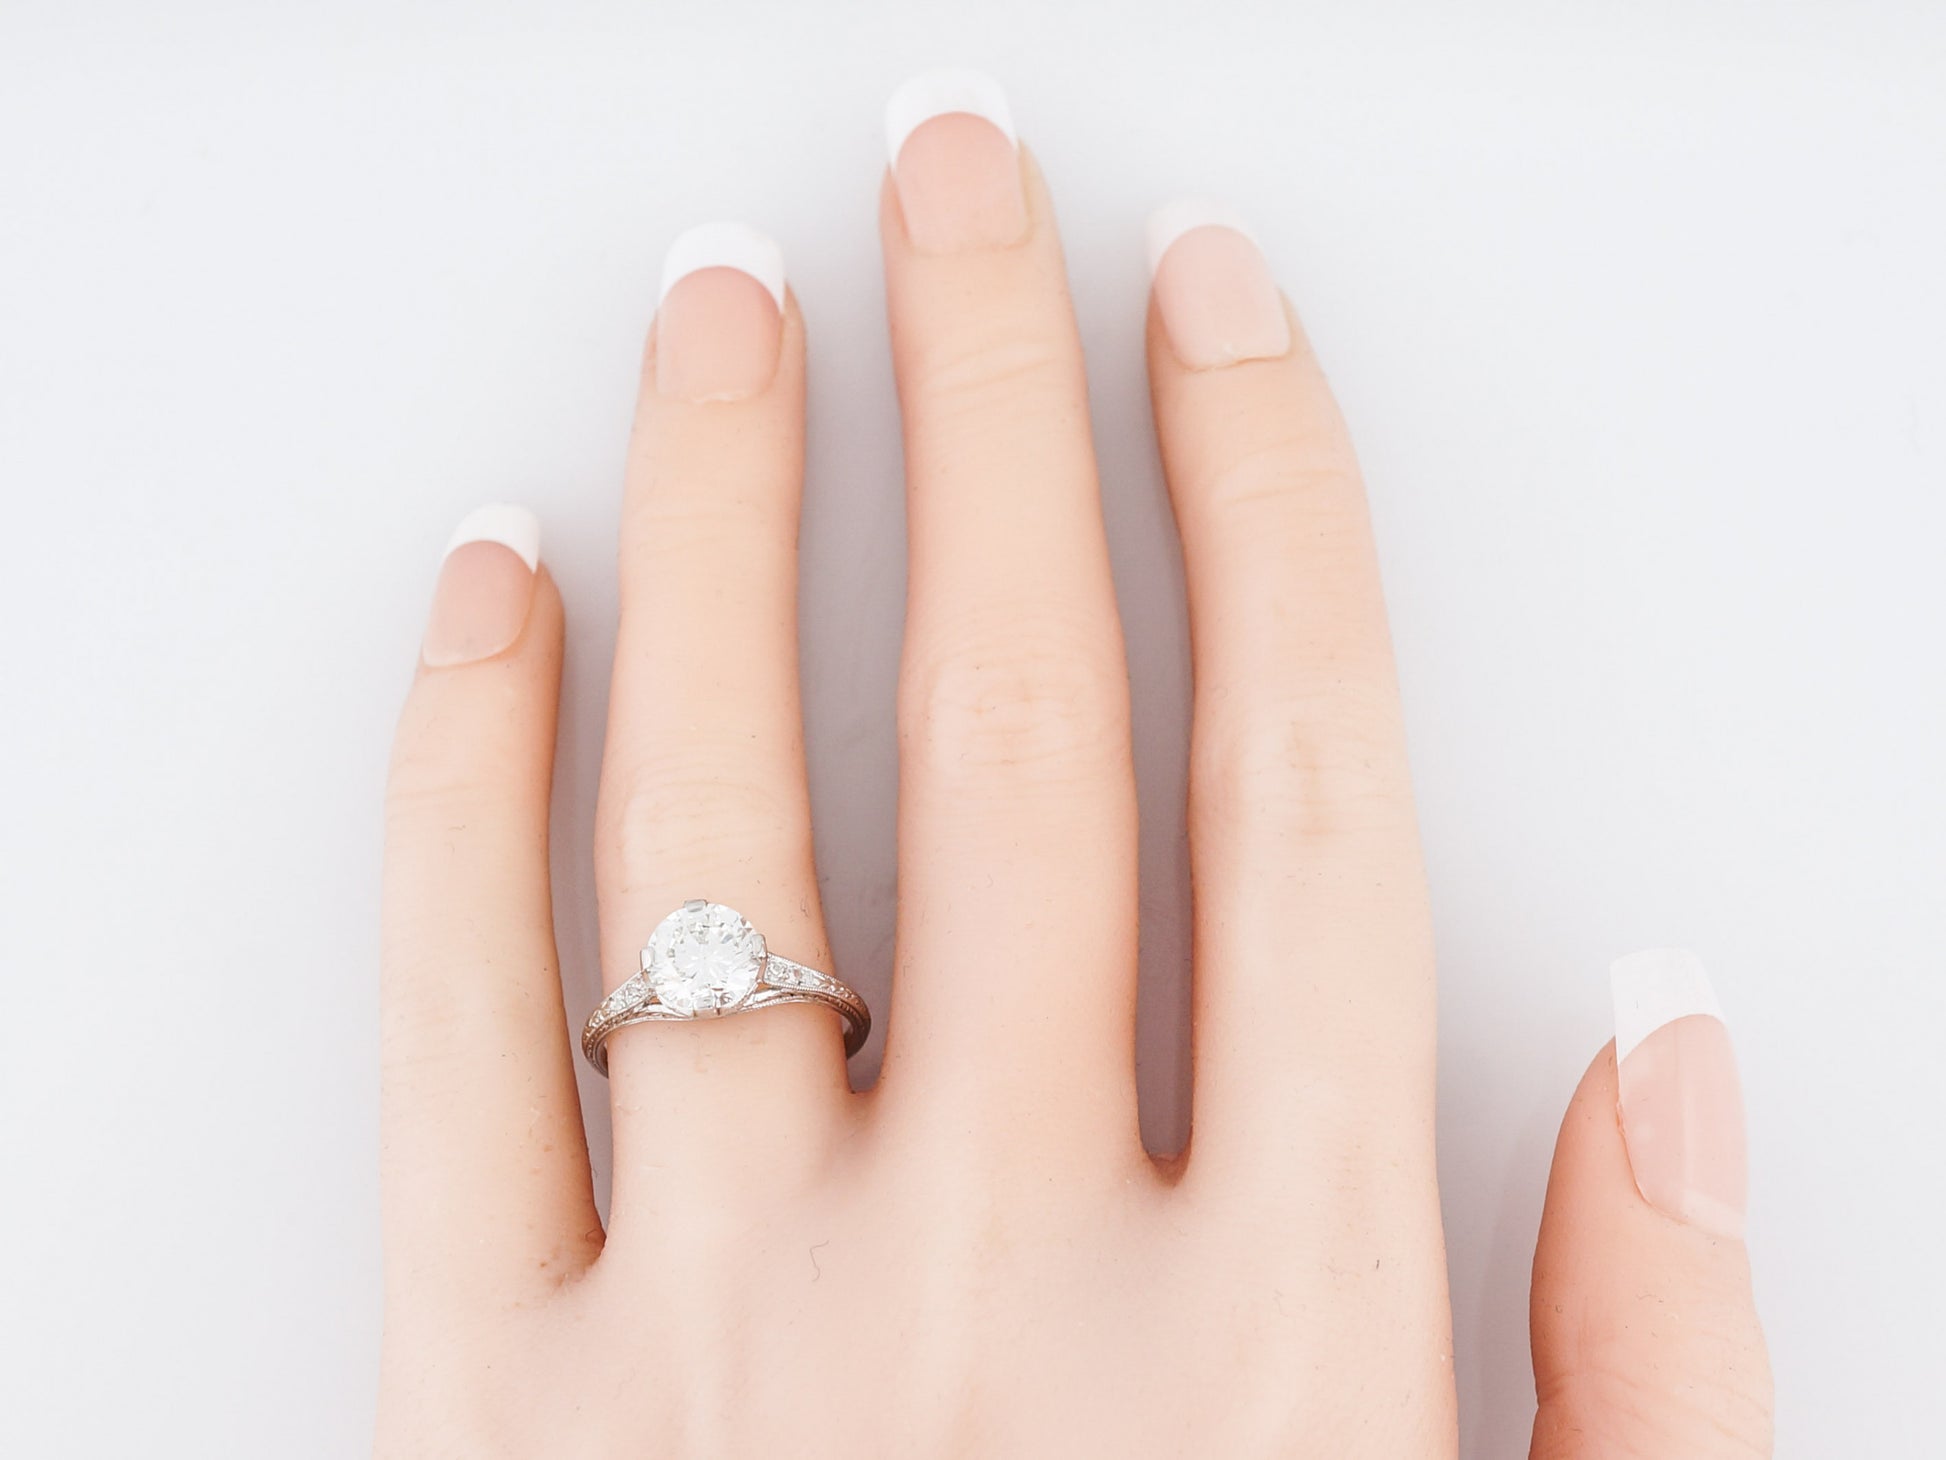 Antique Engagement Ring Art Deco GIA 1.50 Round Brilliant Cut Diamond in Platinum